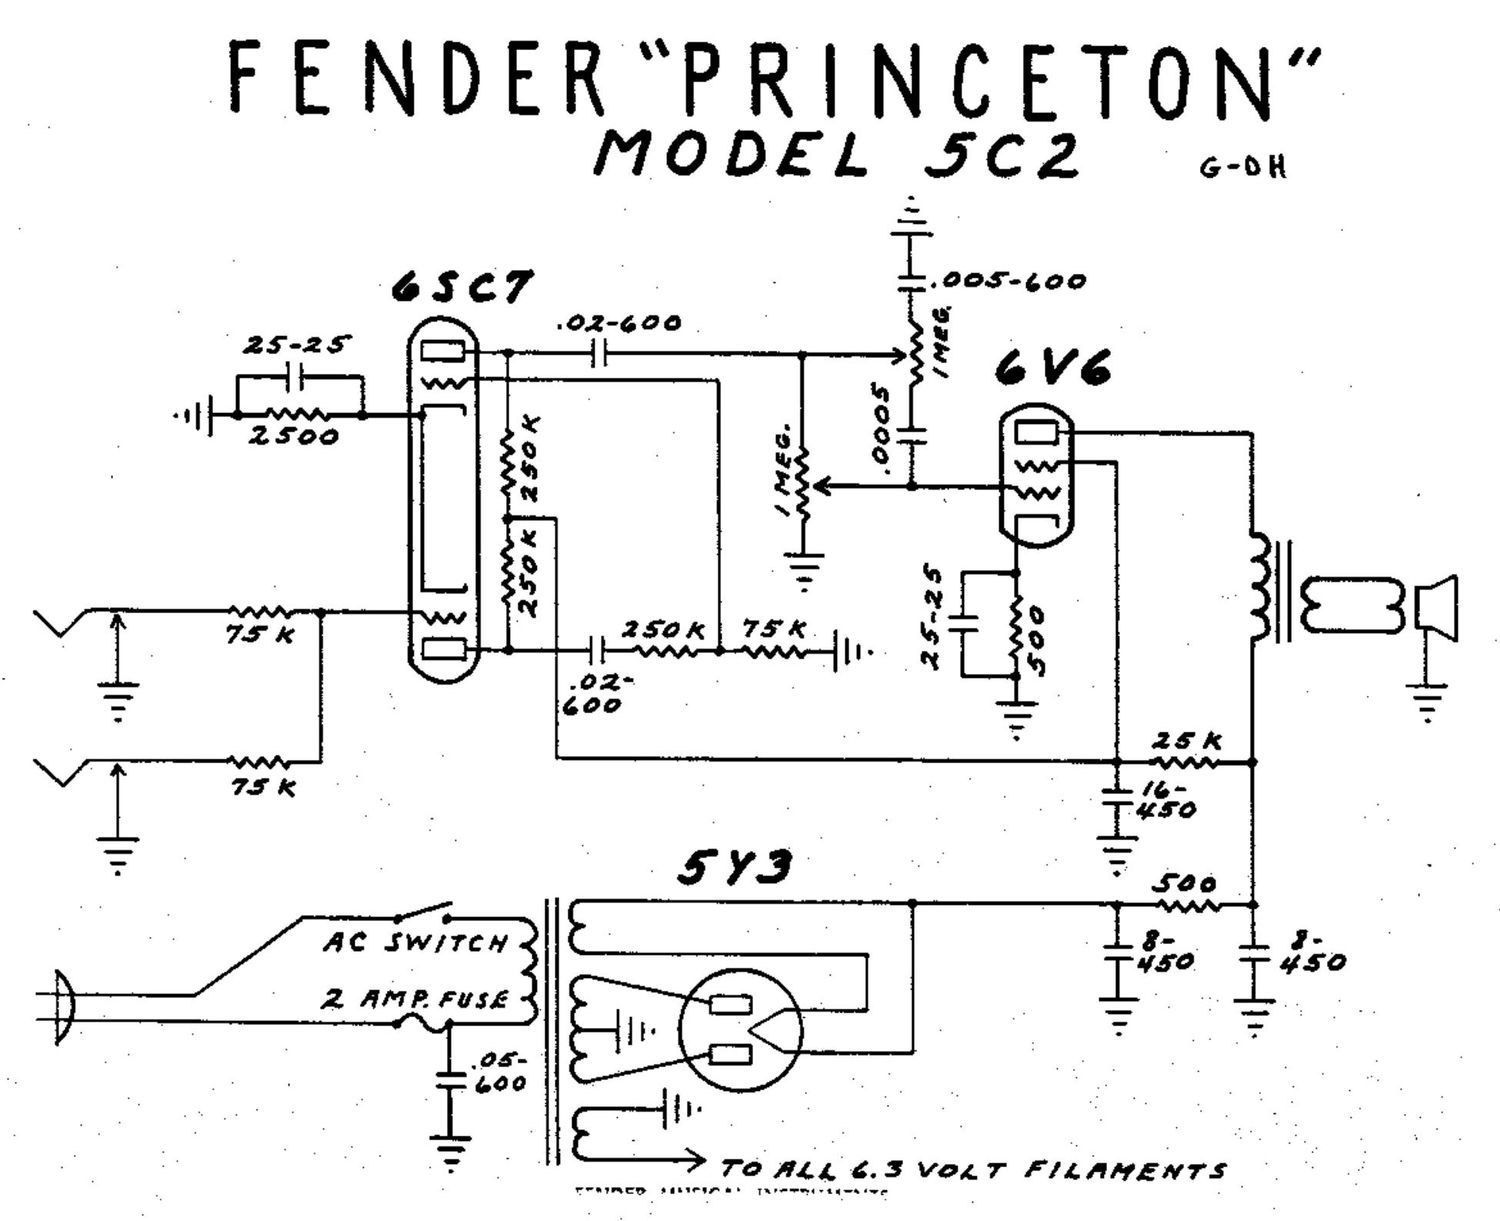 fender princeton 5c2 schematic